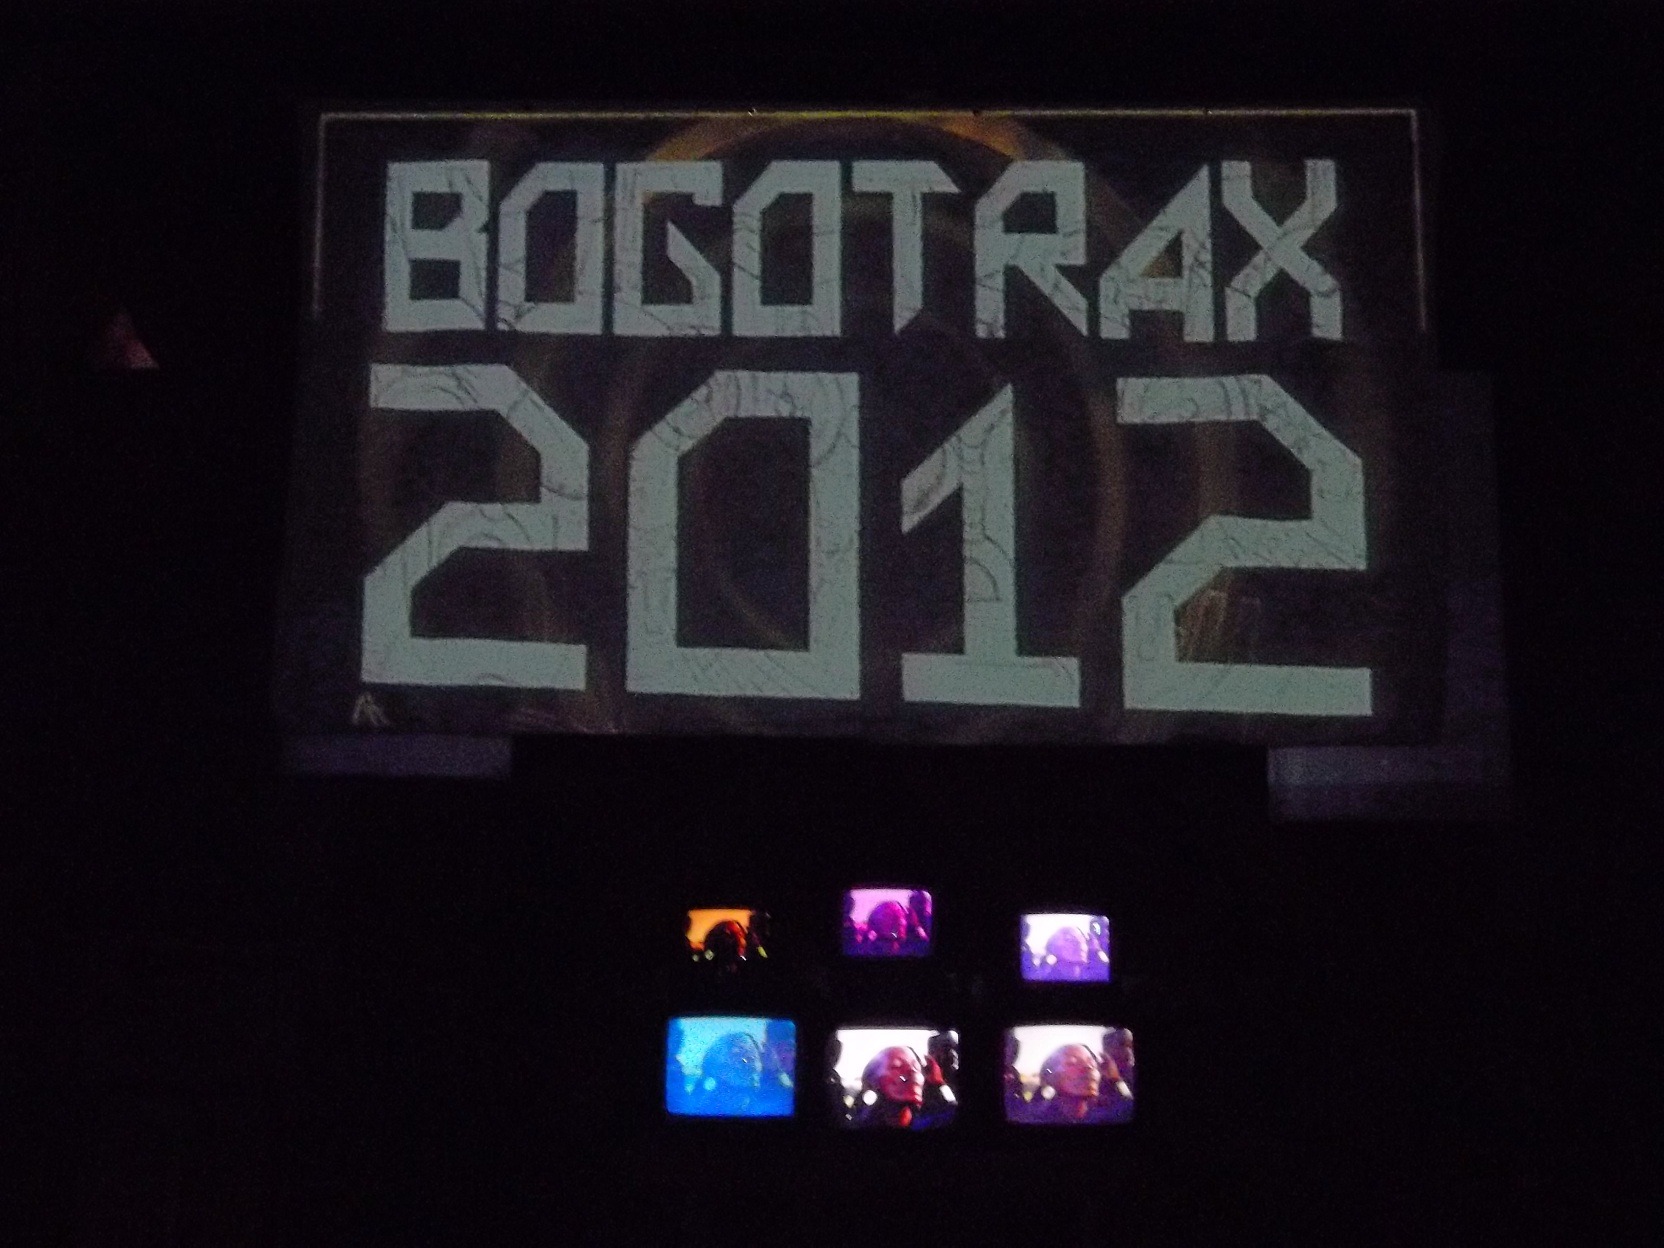 Bogotrax 2012